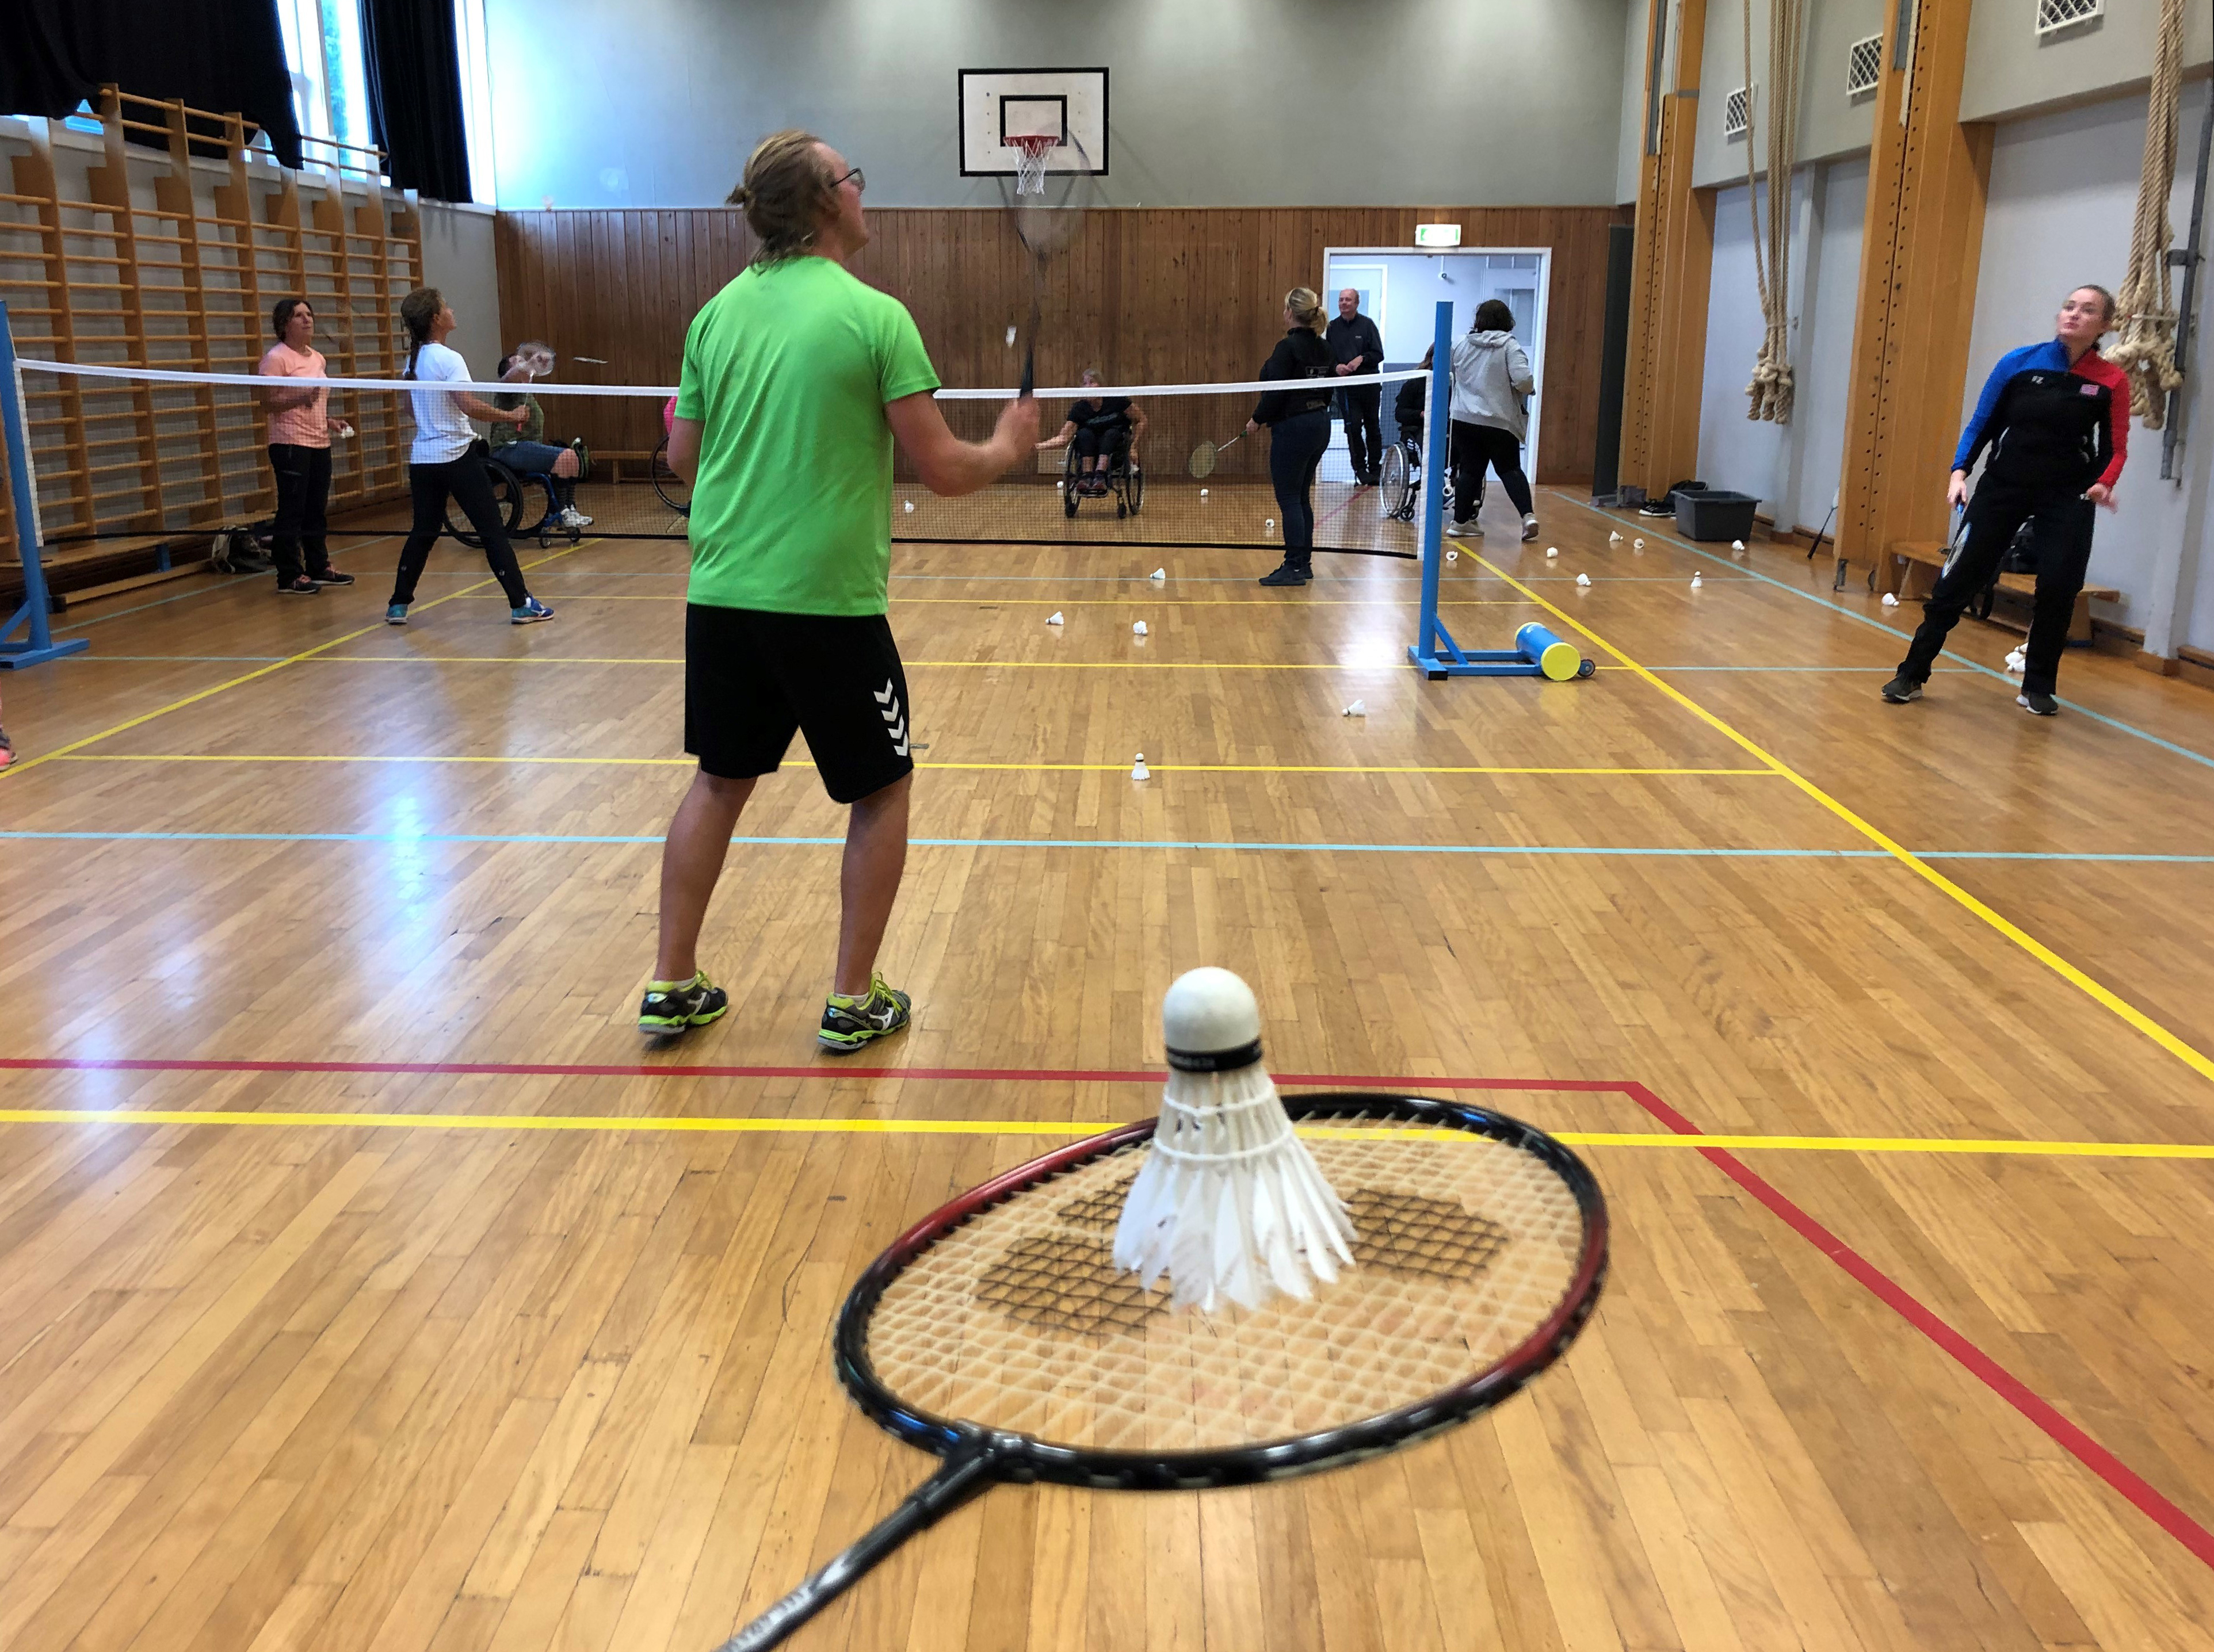 Bildet viser badmintontrening i gymsal for personer med ulike funksjonsnedsettelser